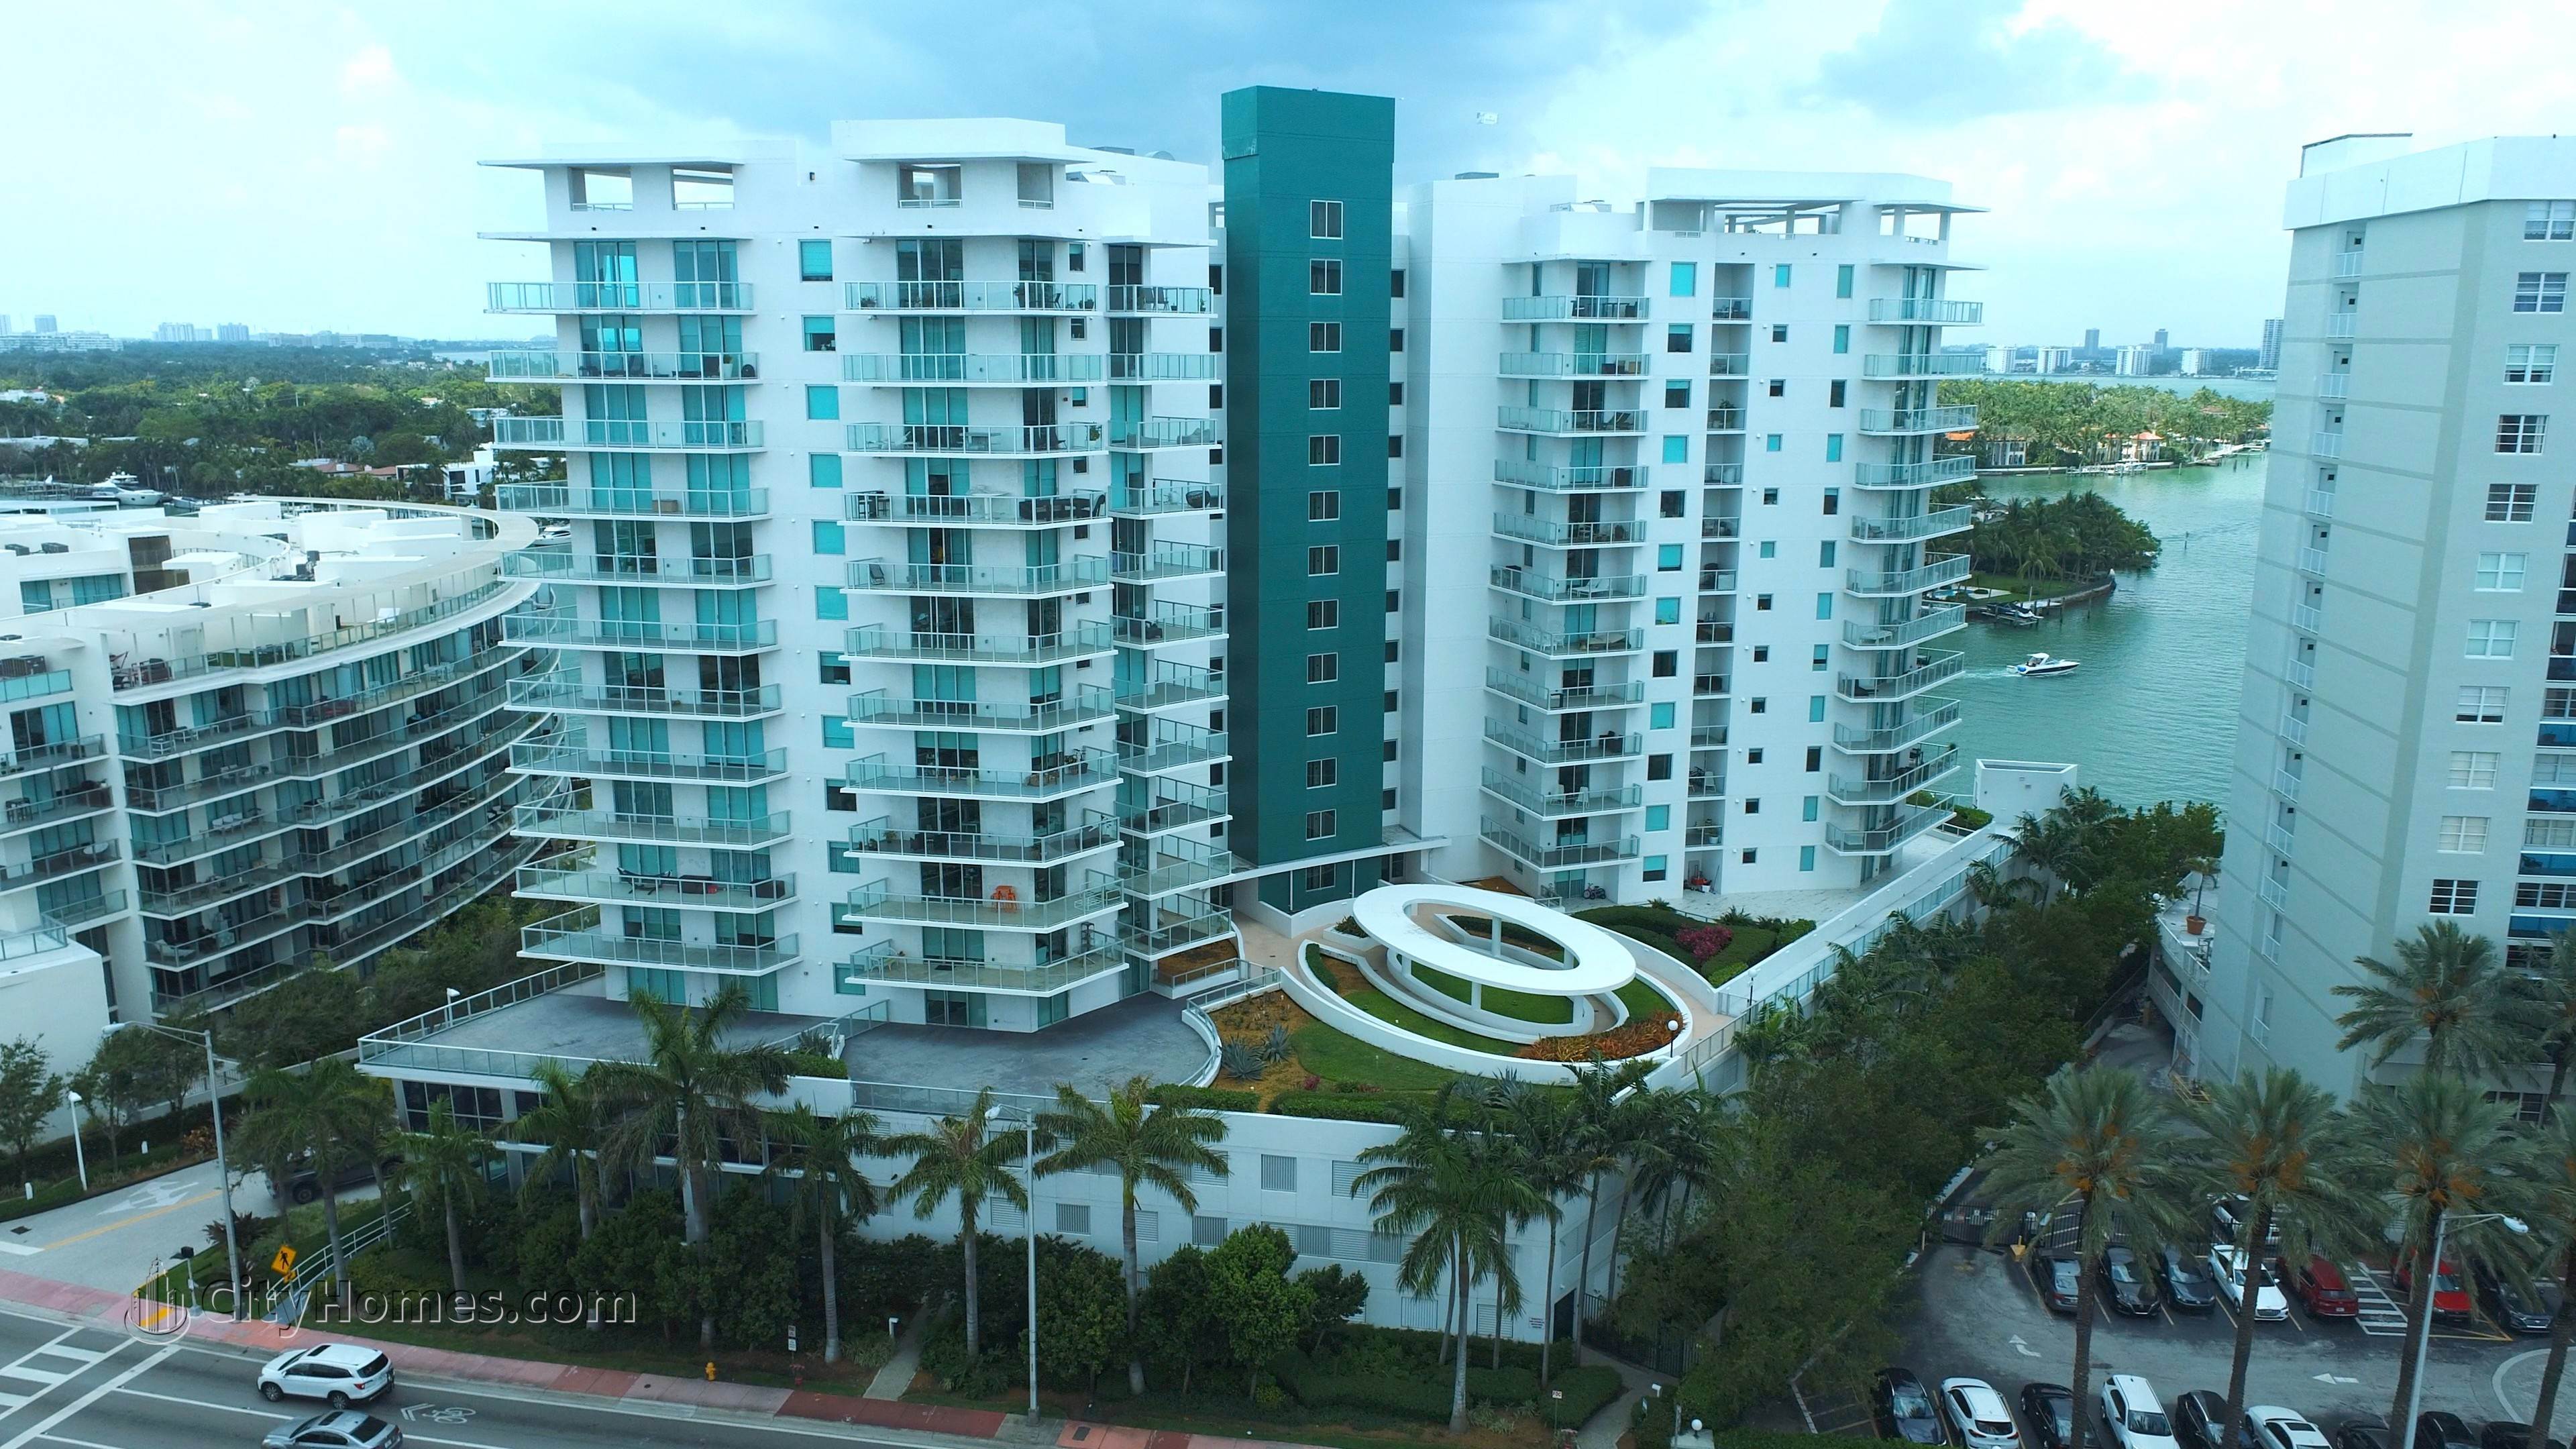 EDEN HOUSE xây dựng tại 6700 Indian Creek Drive, North Beach, Miami Beach, FL 33141